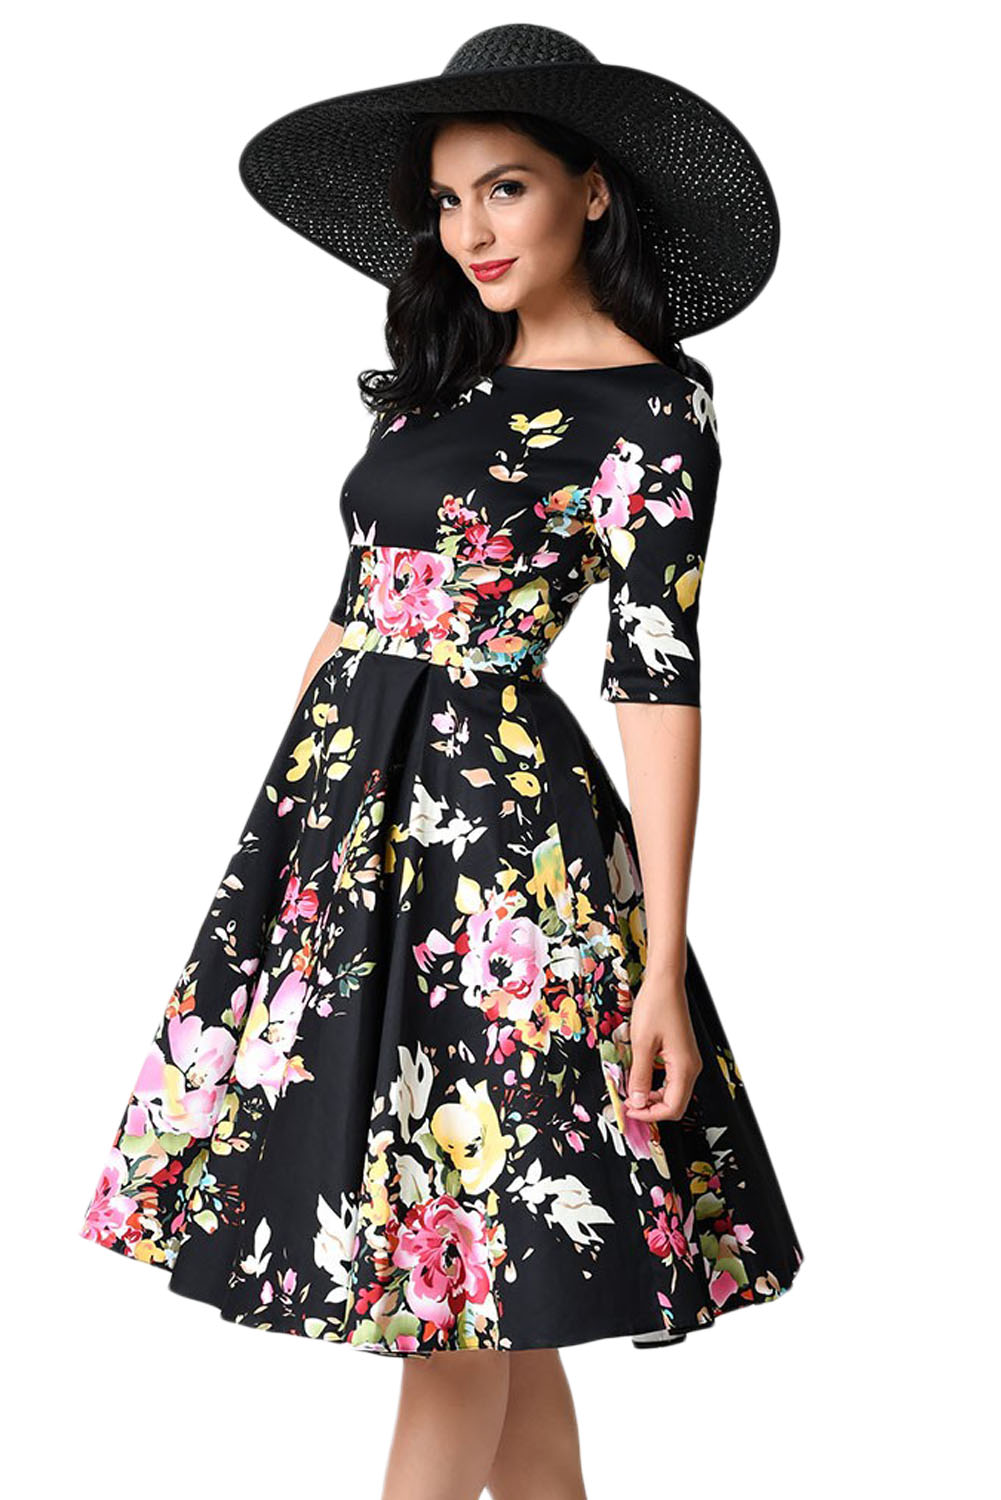 BY61702-2 Black Vintage Style Floral Half Sleeve Swing Dress